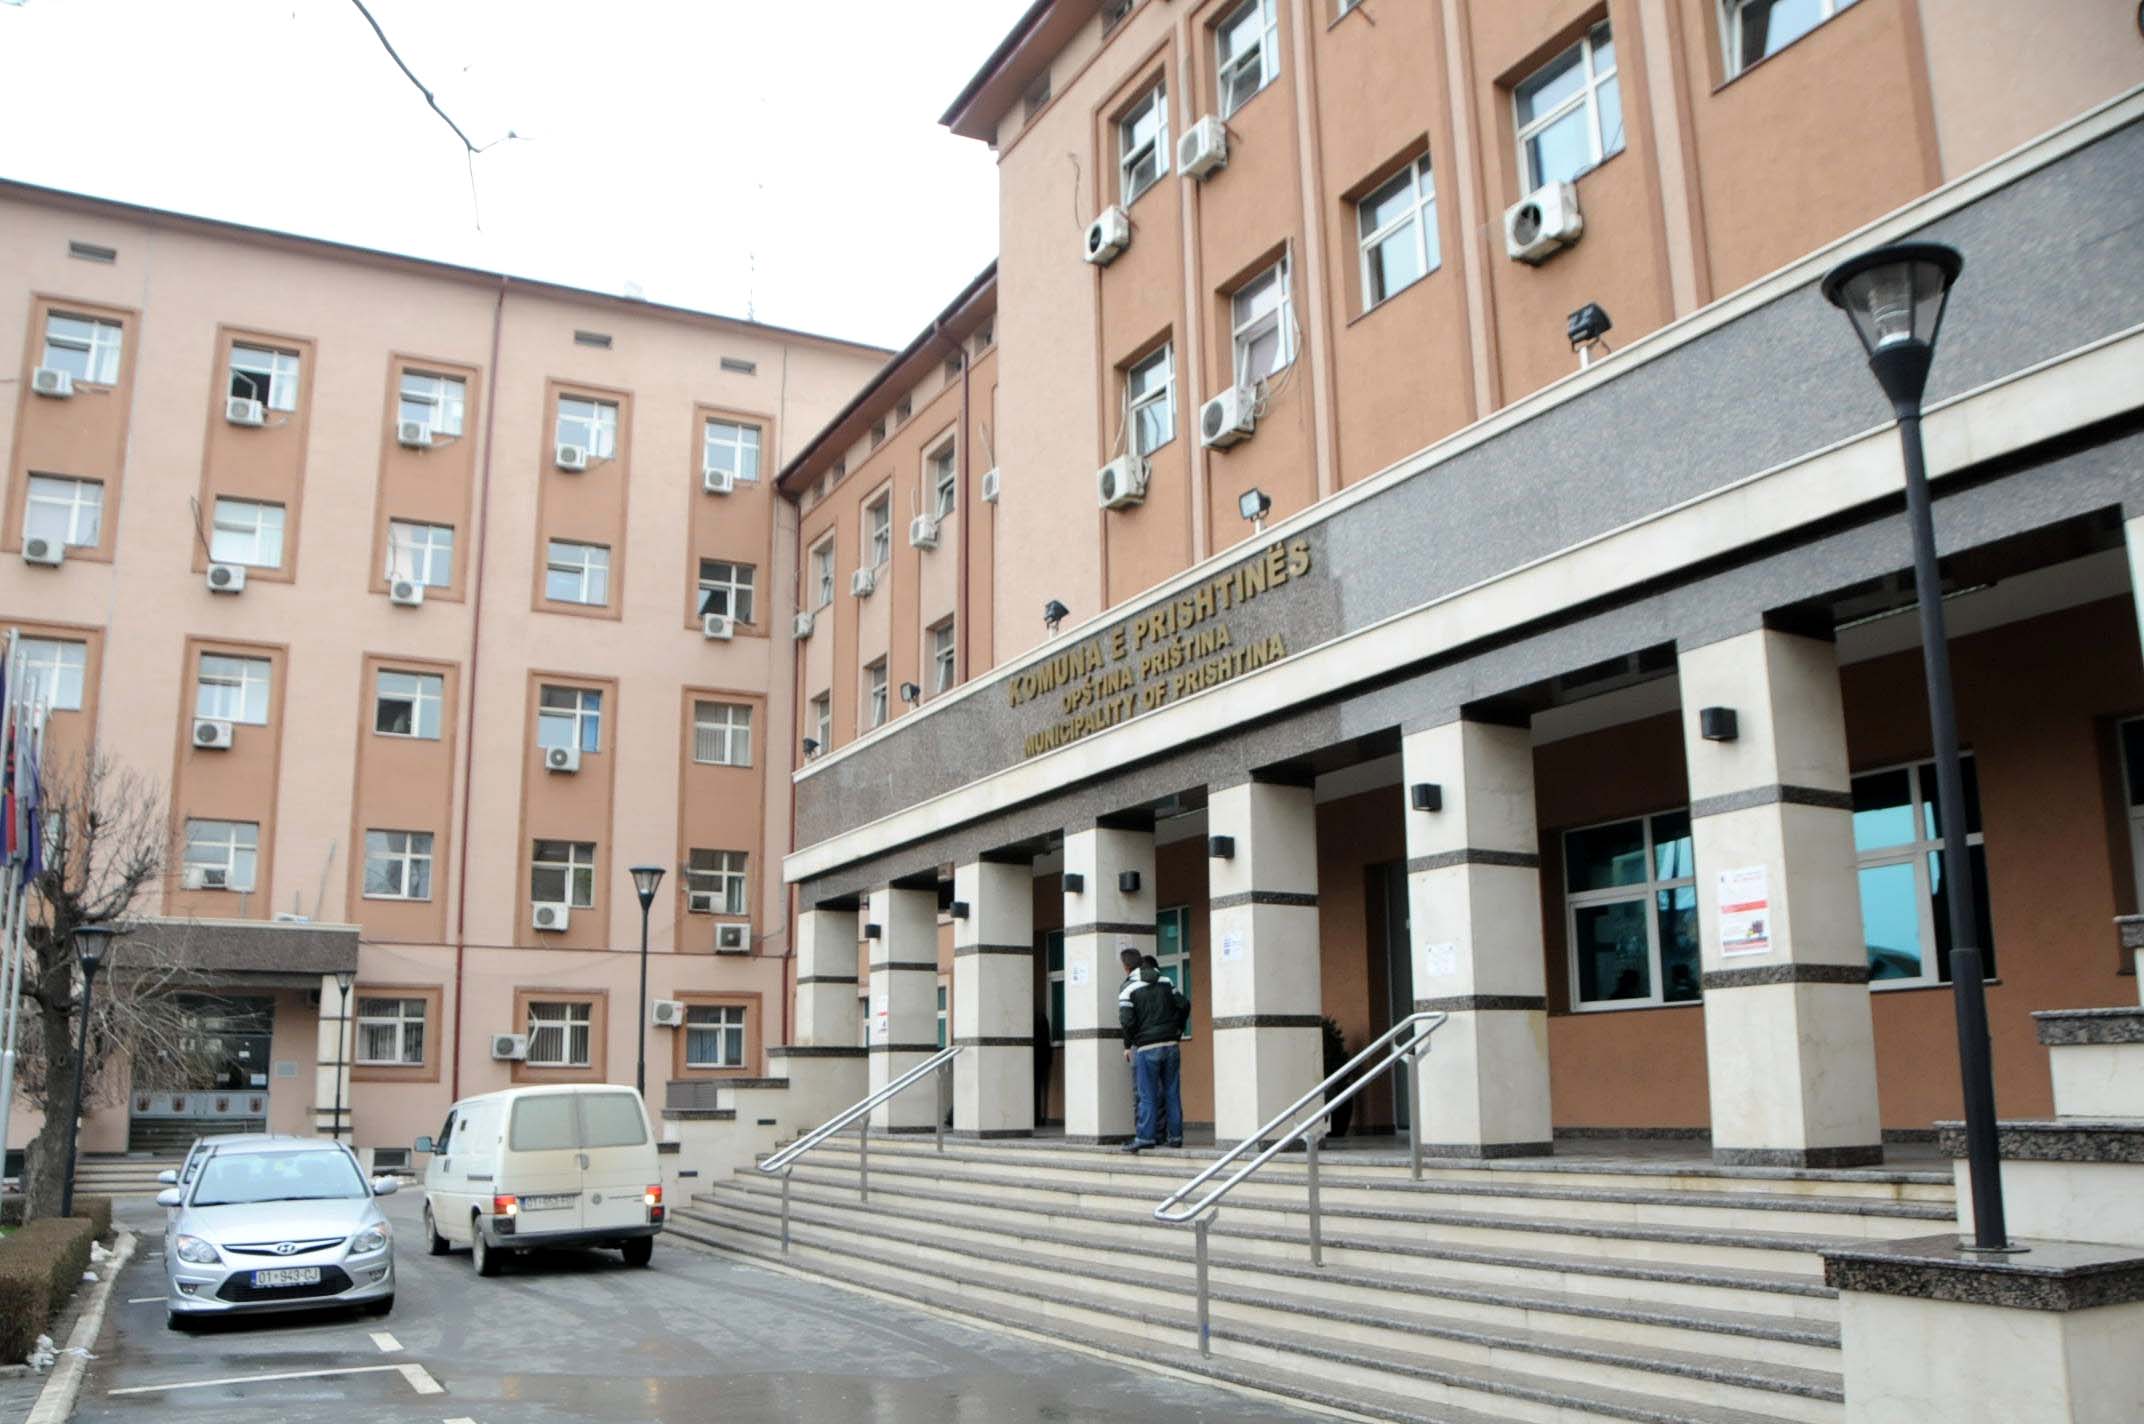  Vdes një person në ndërtesën e Komunës së Prishtinës